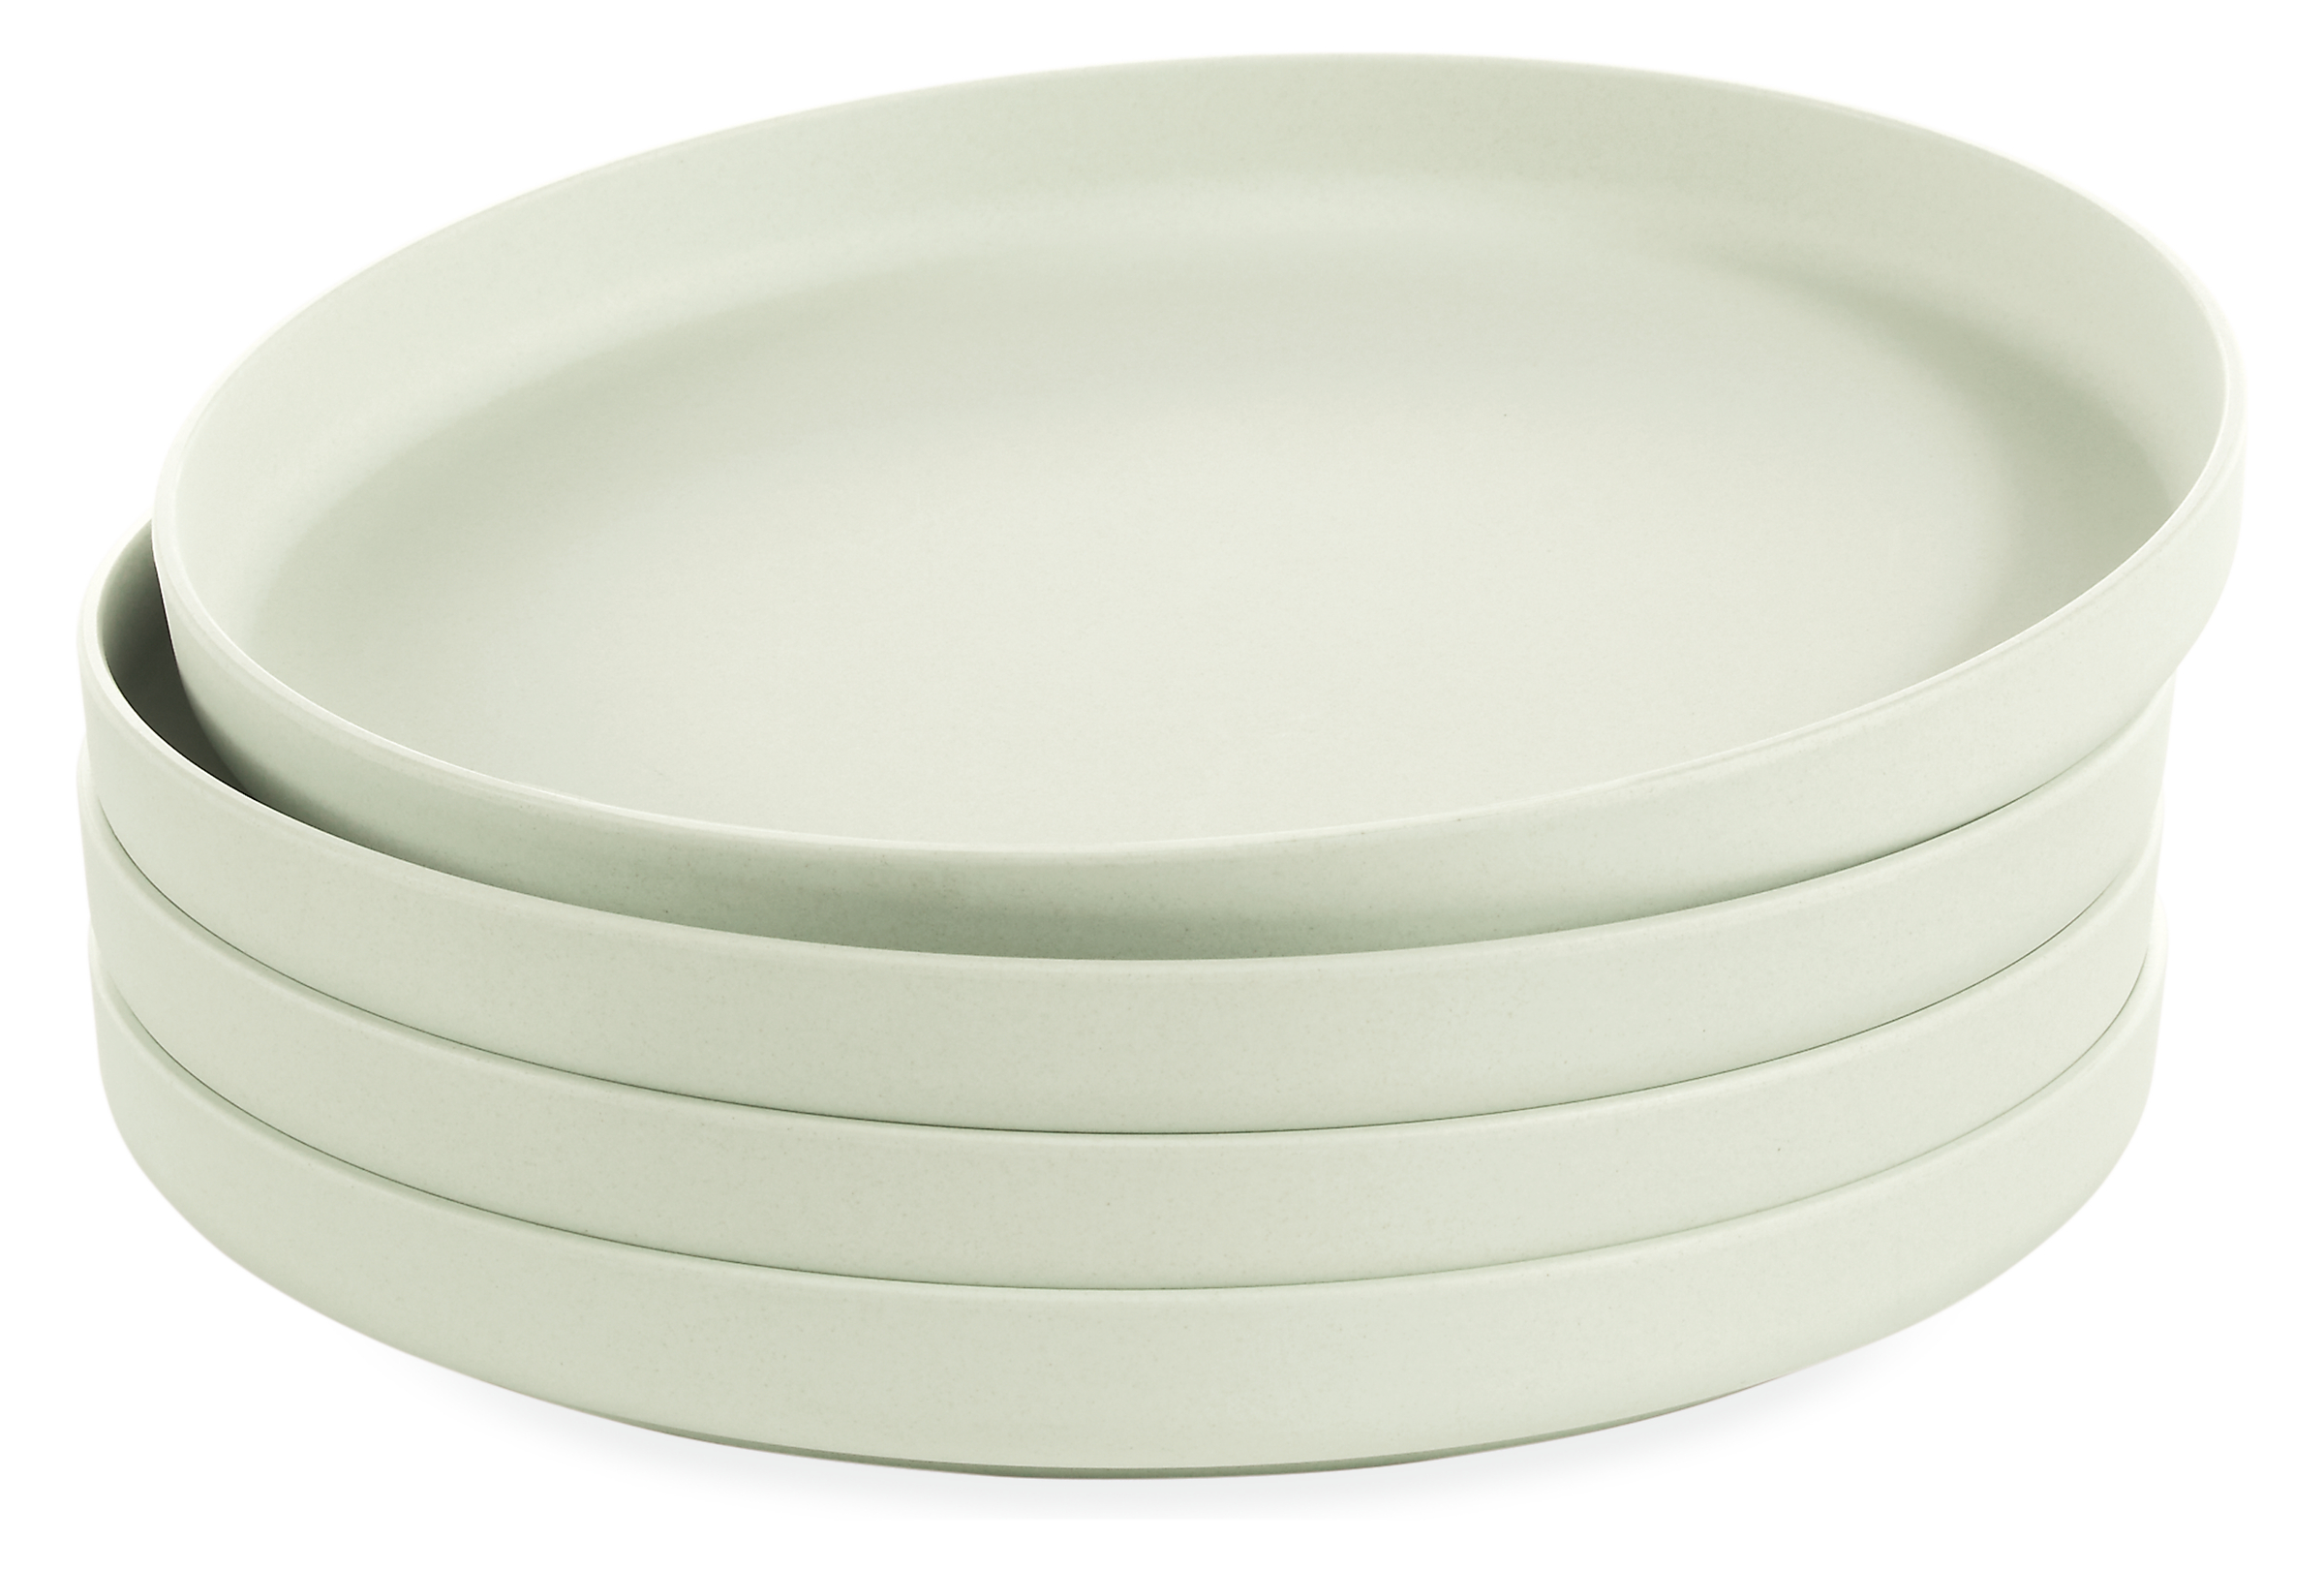 Namu 8 diam Salad/Dessert Plate Set of Four